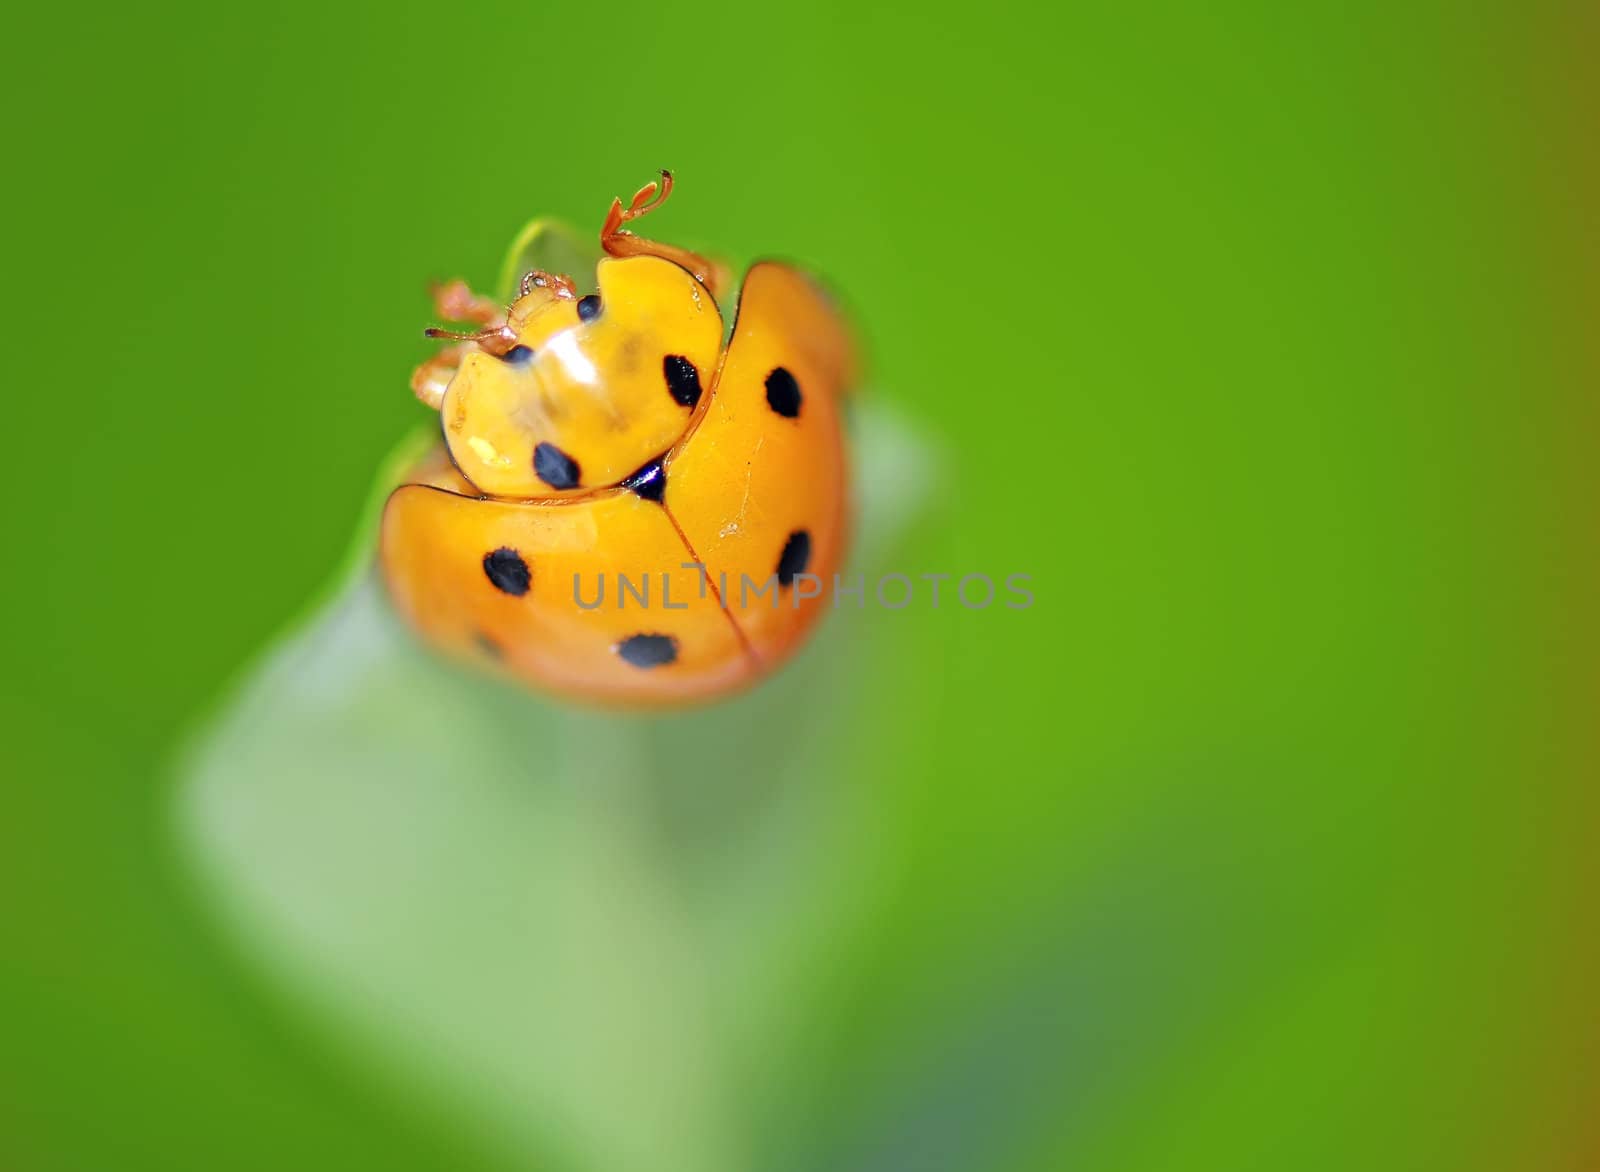 Ladybug by xfdly5